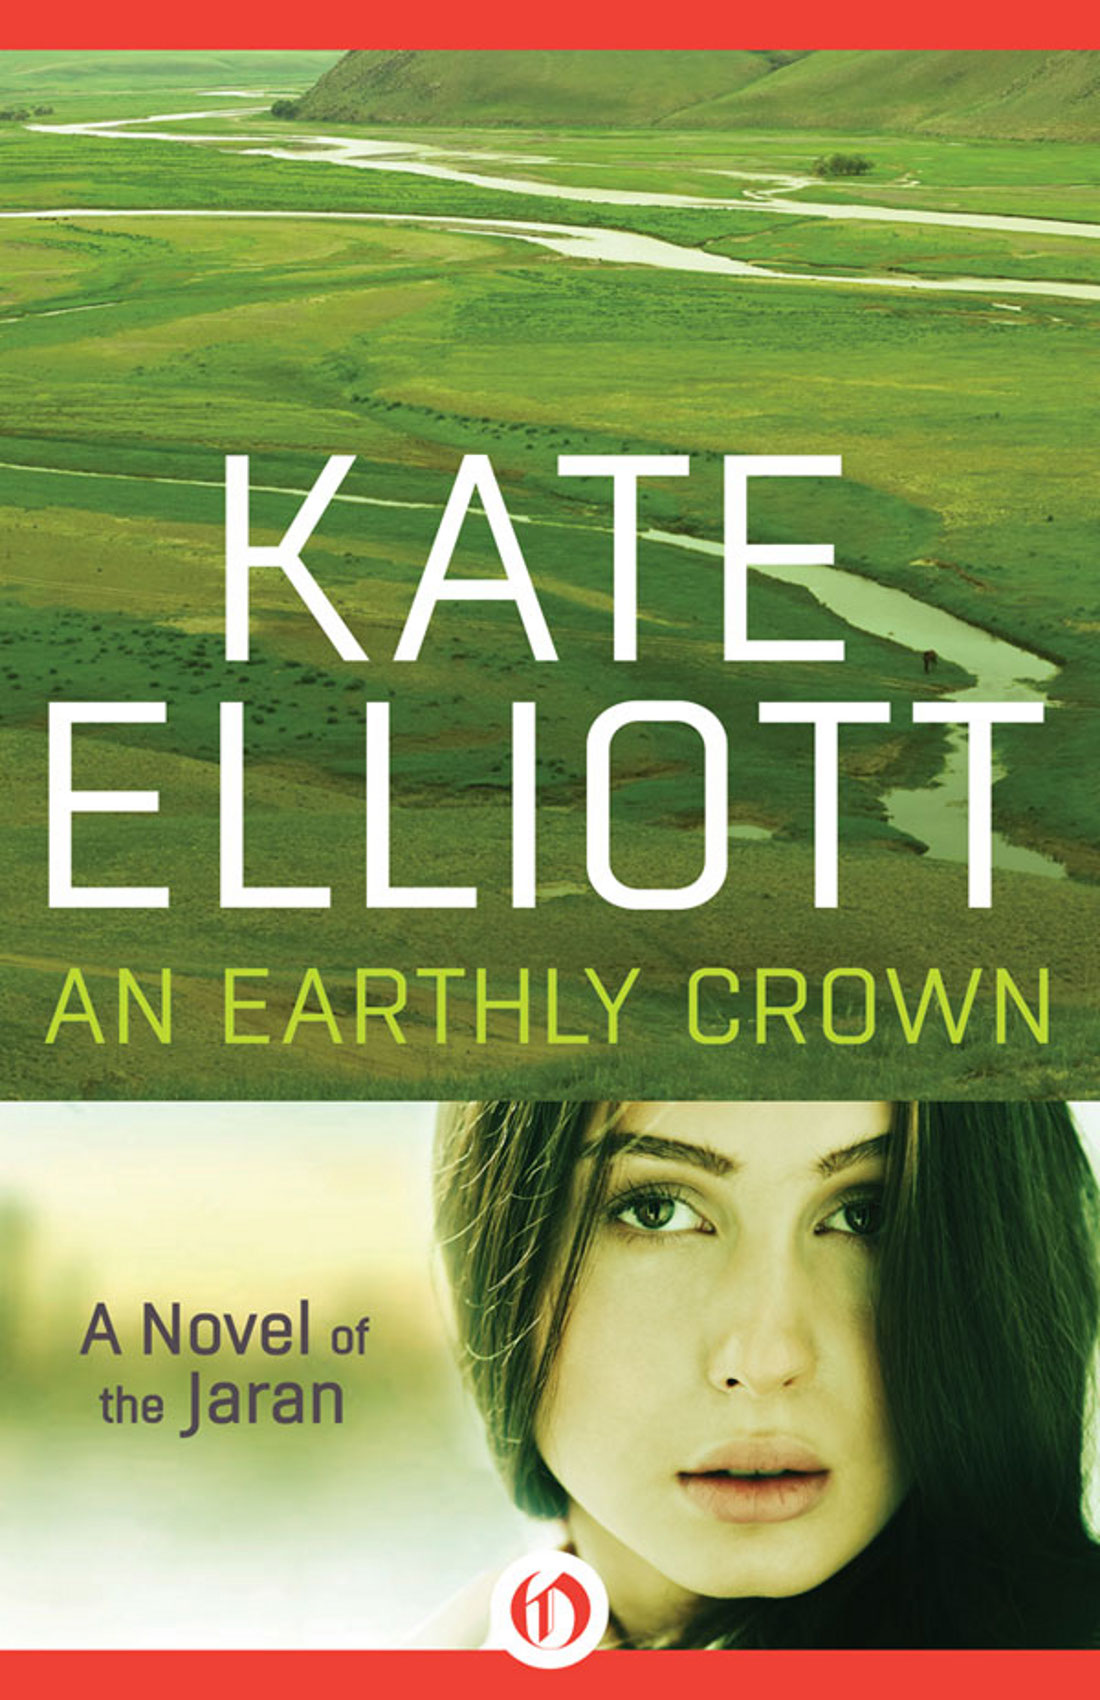 Earthly Crown by Kate Elliott